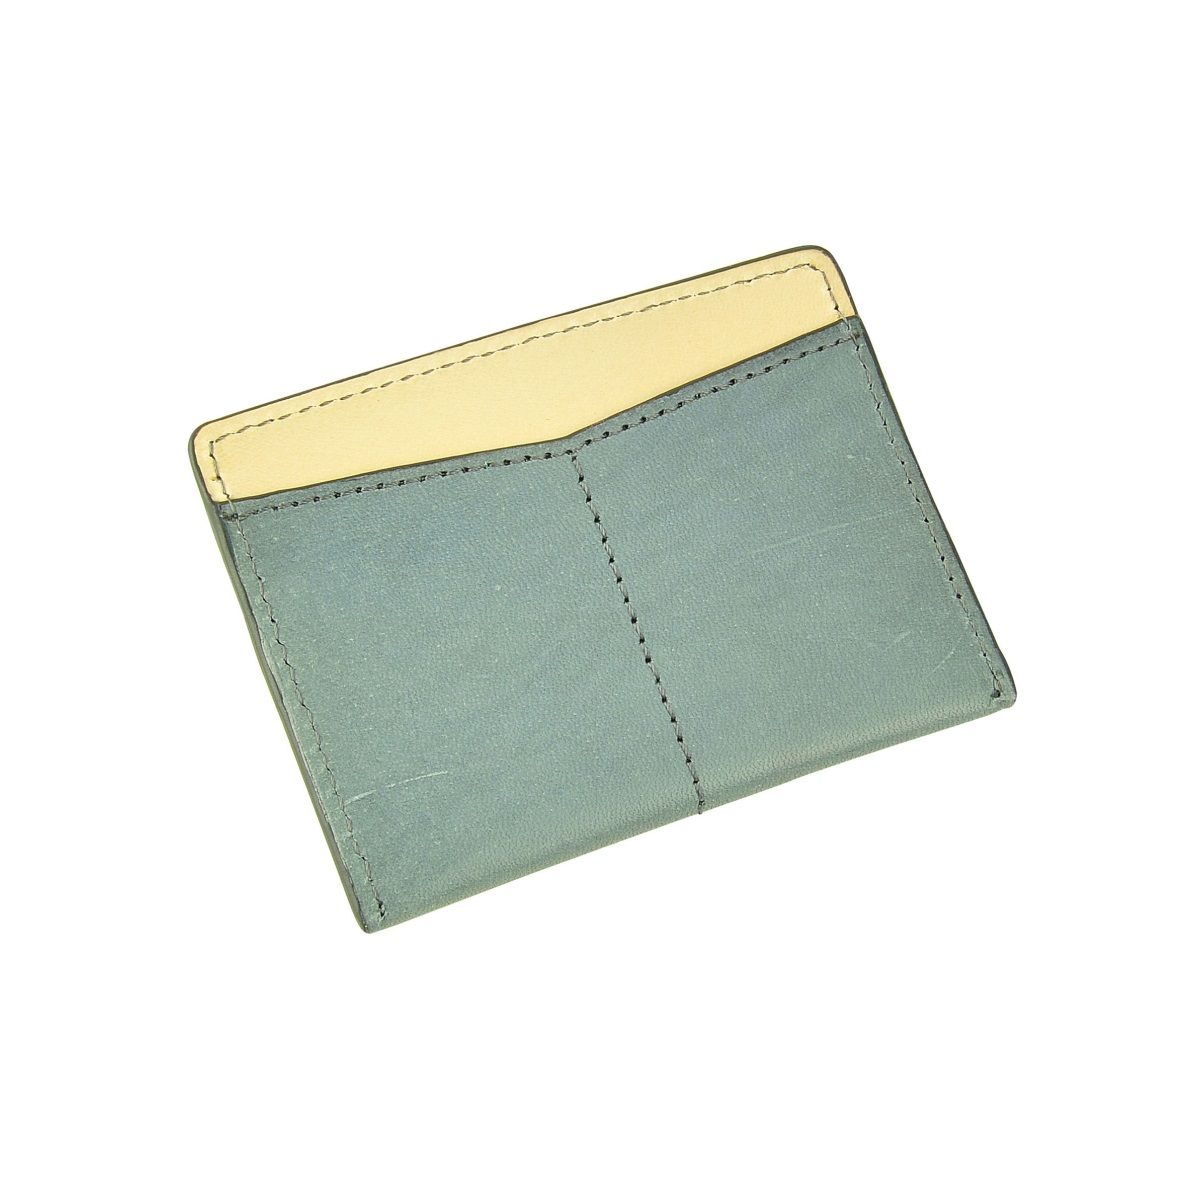 J.FOLD Flat Carrier Leather Wallet - Slate